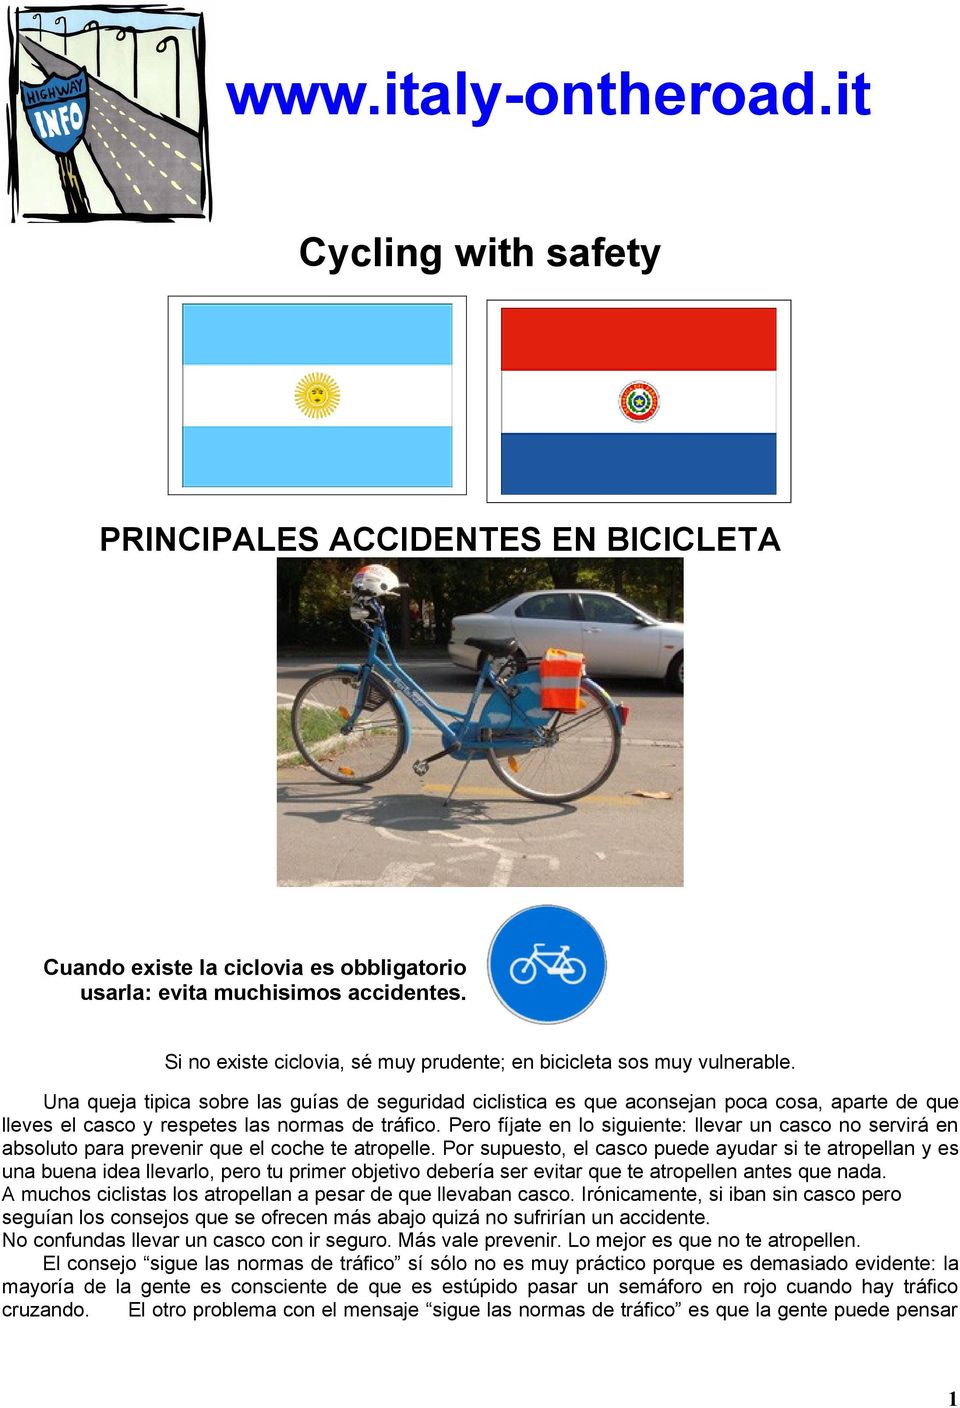 Una queja tipica sobre las guías de seguridad ciclistica es que aconsejan poca cosa, aparte de que lleves el casco y respetes las normas de tráfico.